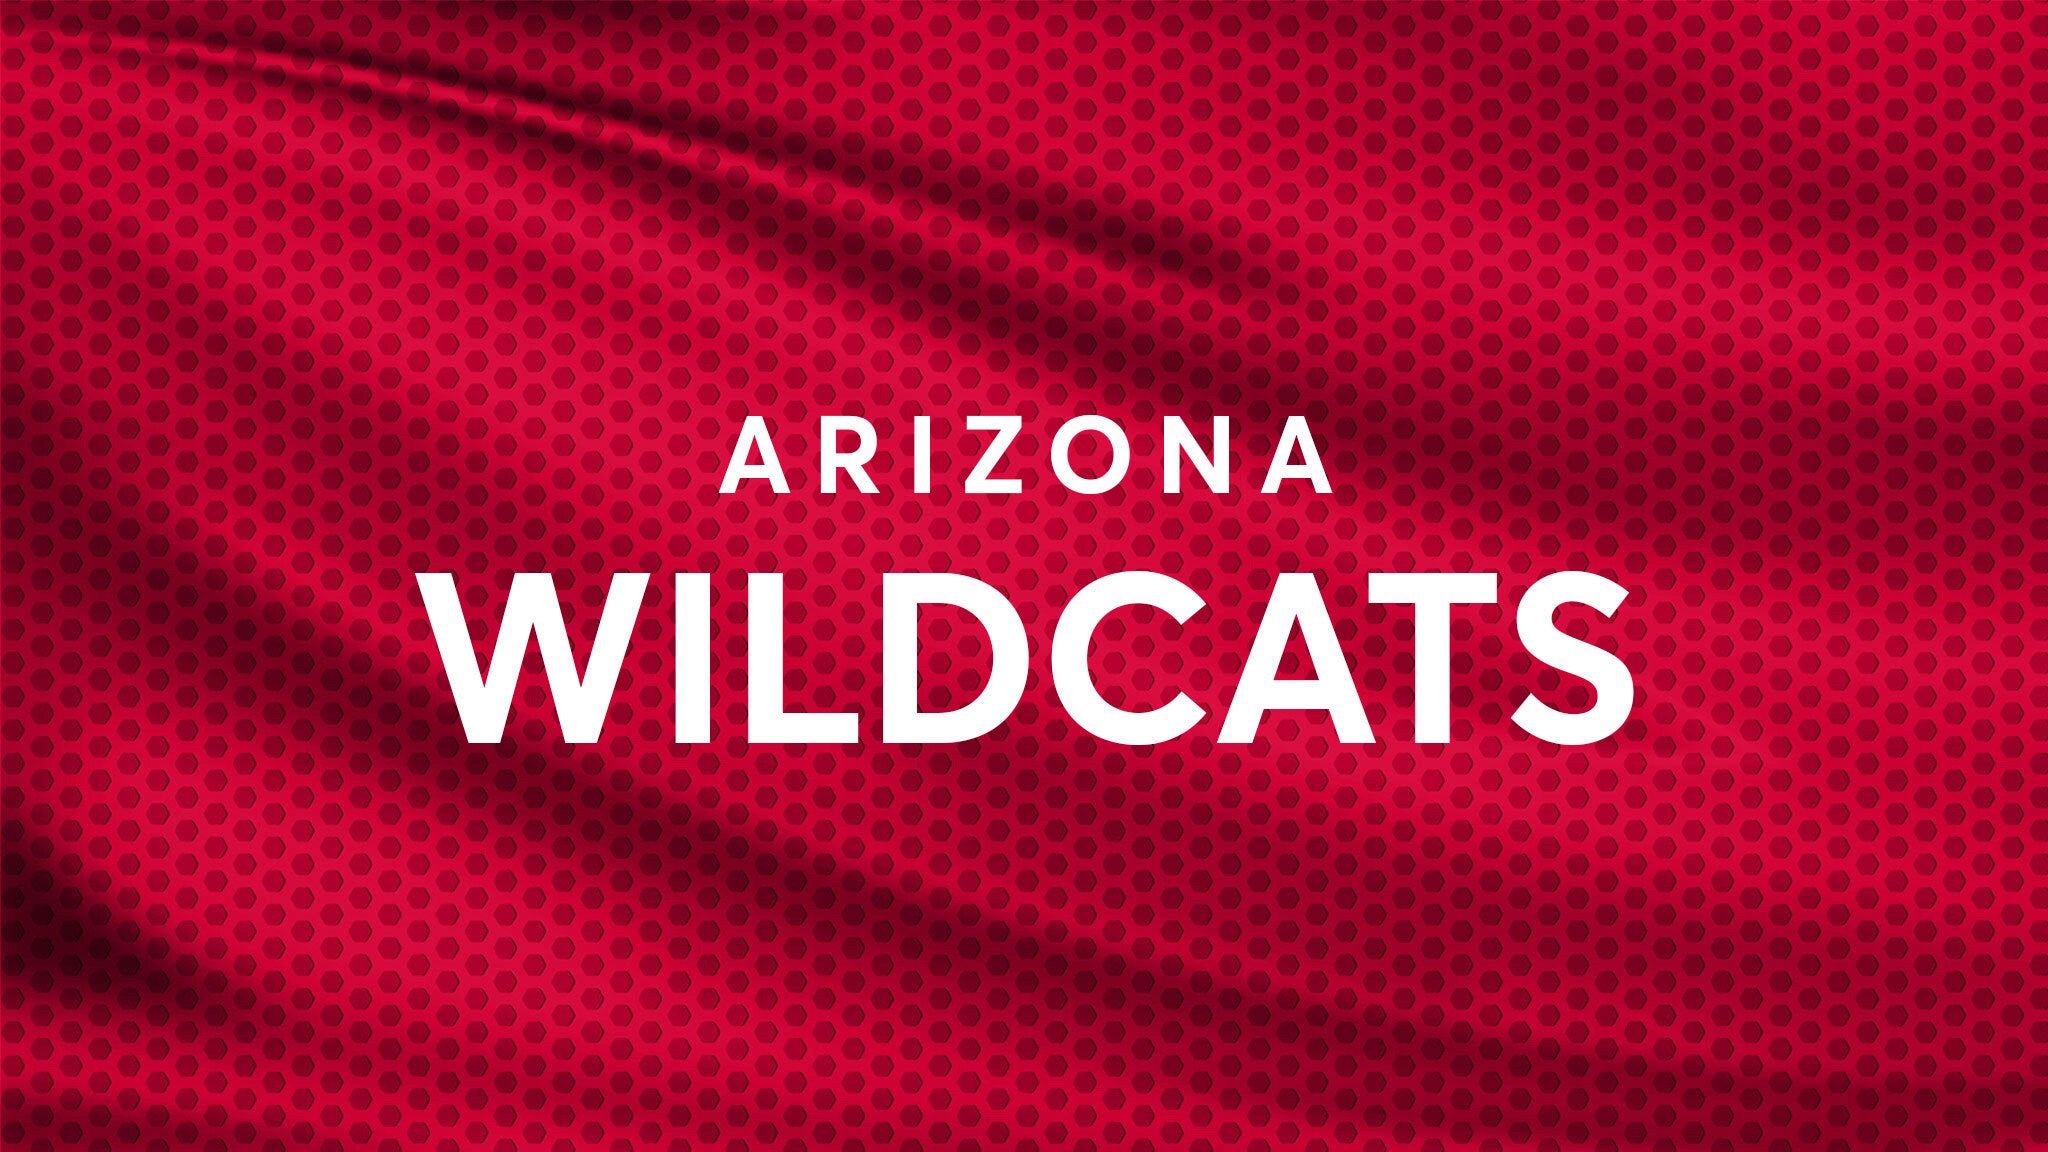 Arizona Wildcats Football vs. New Mexico Lobos Football